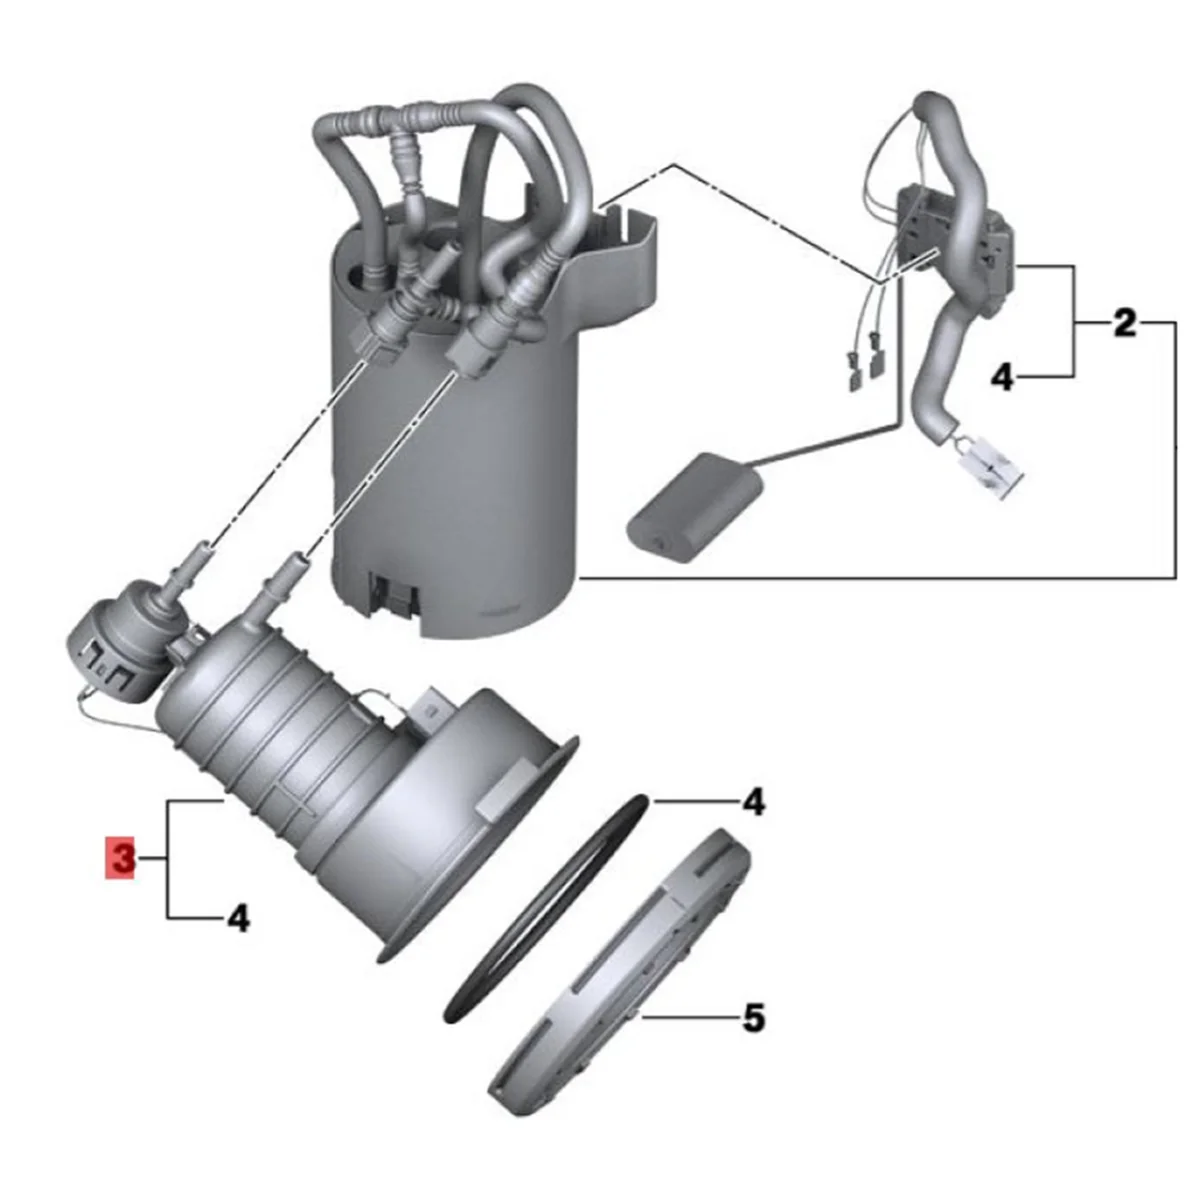 

Car Fuel Filter Pressure Regulator Repair 16117313794 for BMW Z4 E89 N20 N54 2009-2015 in Tank Fuel Pump Module